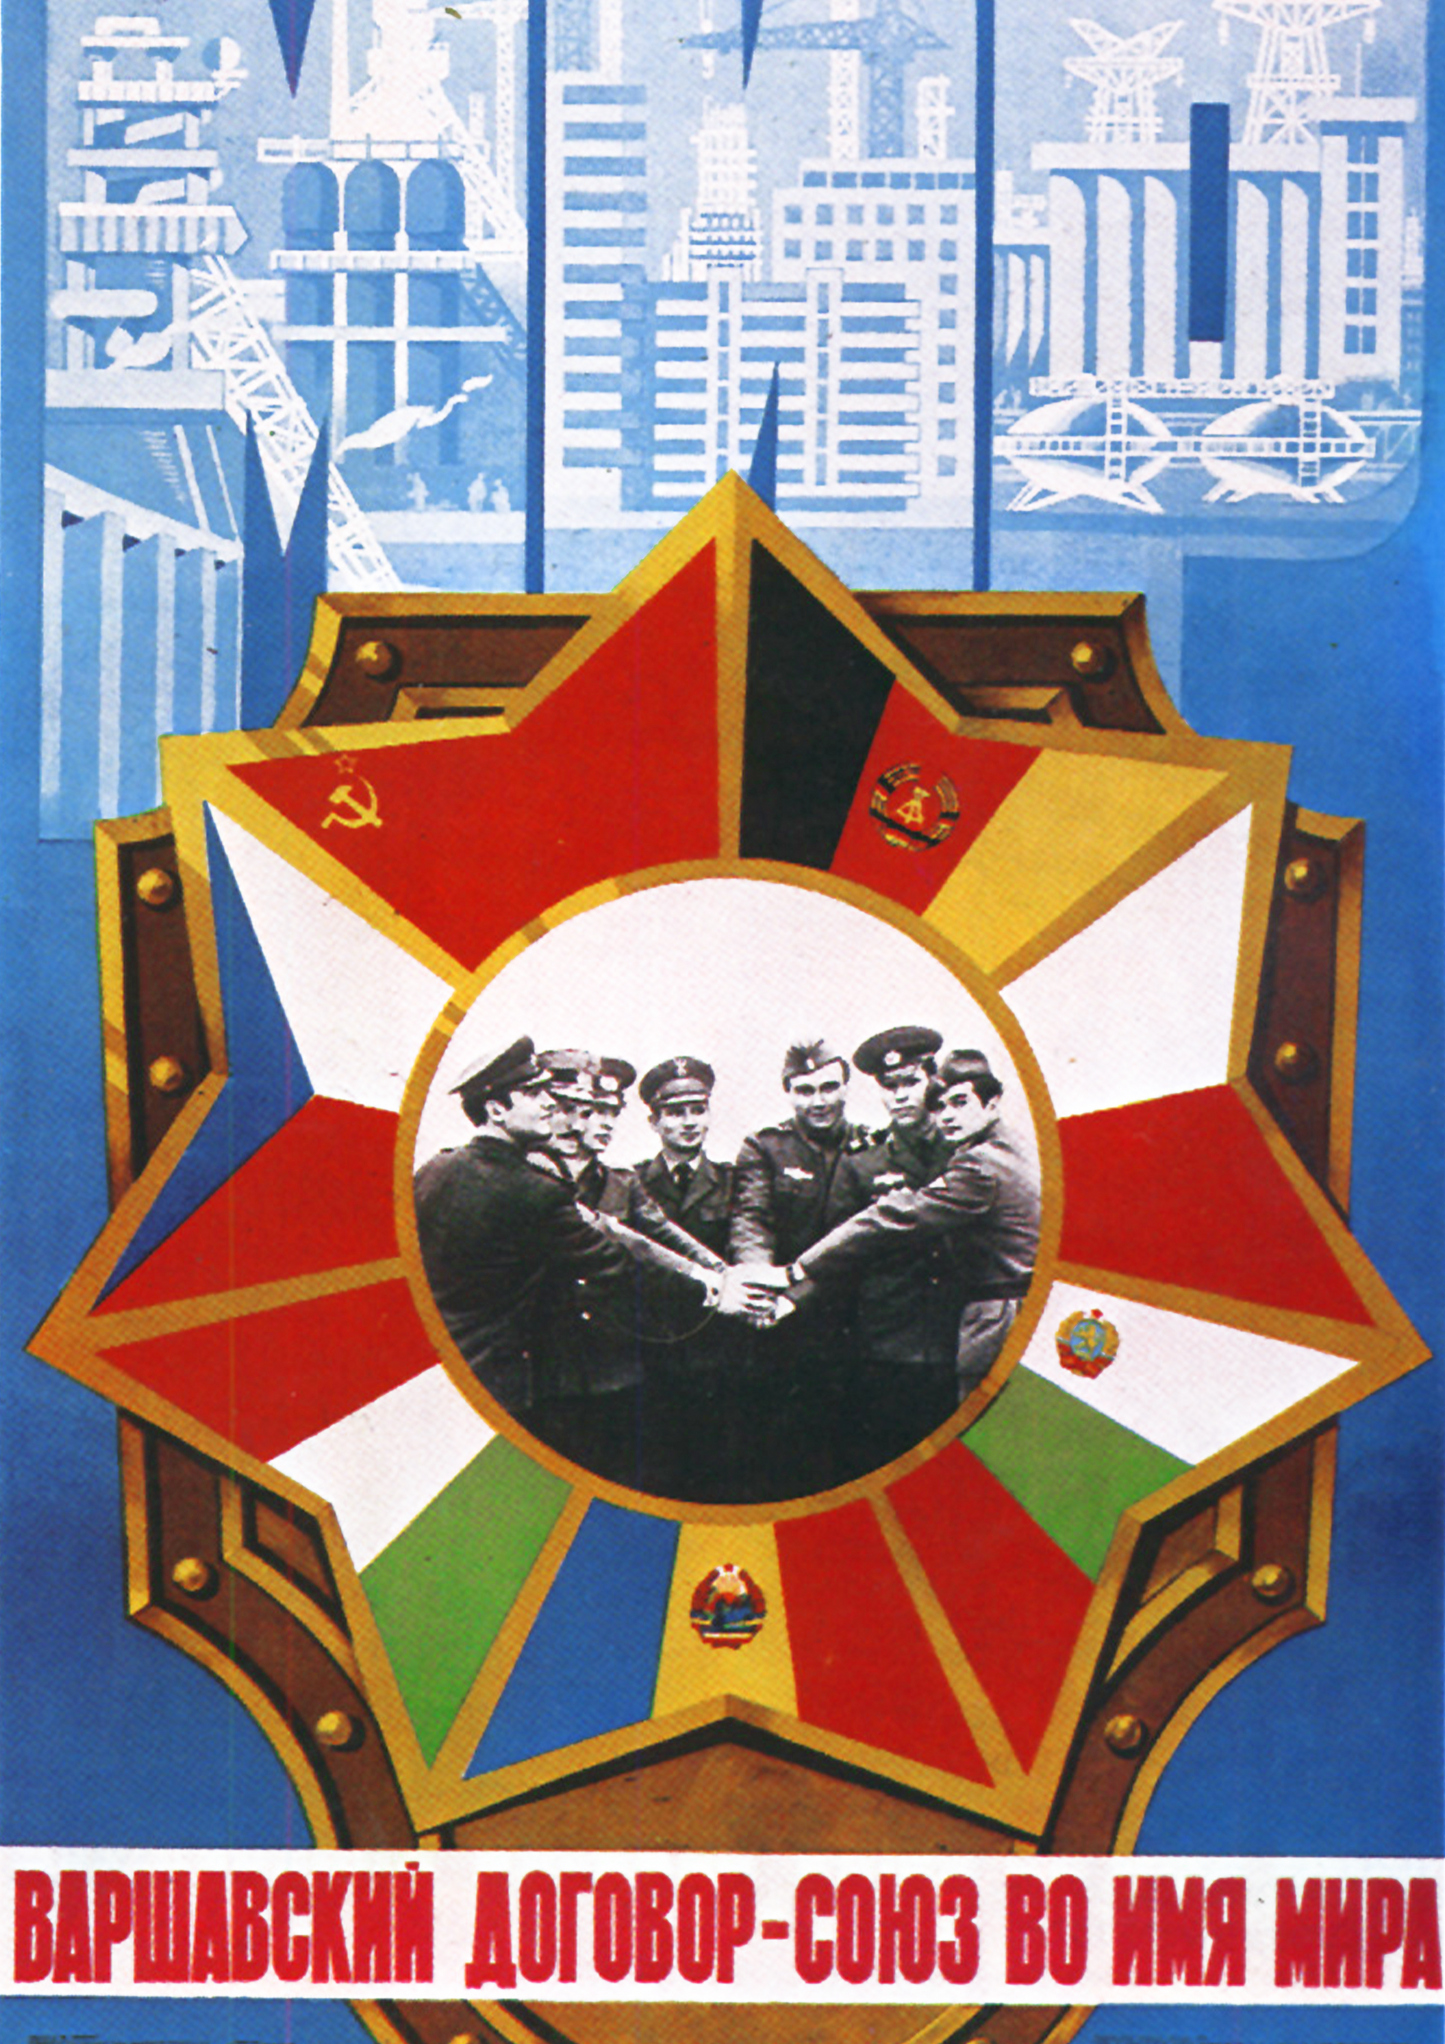 Warsaw Pact Propaganda Poster